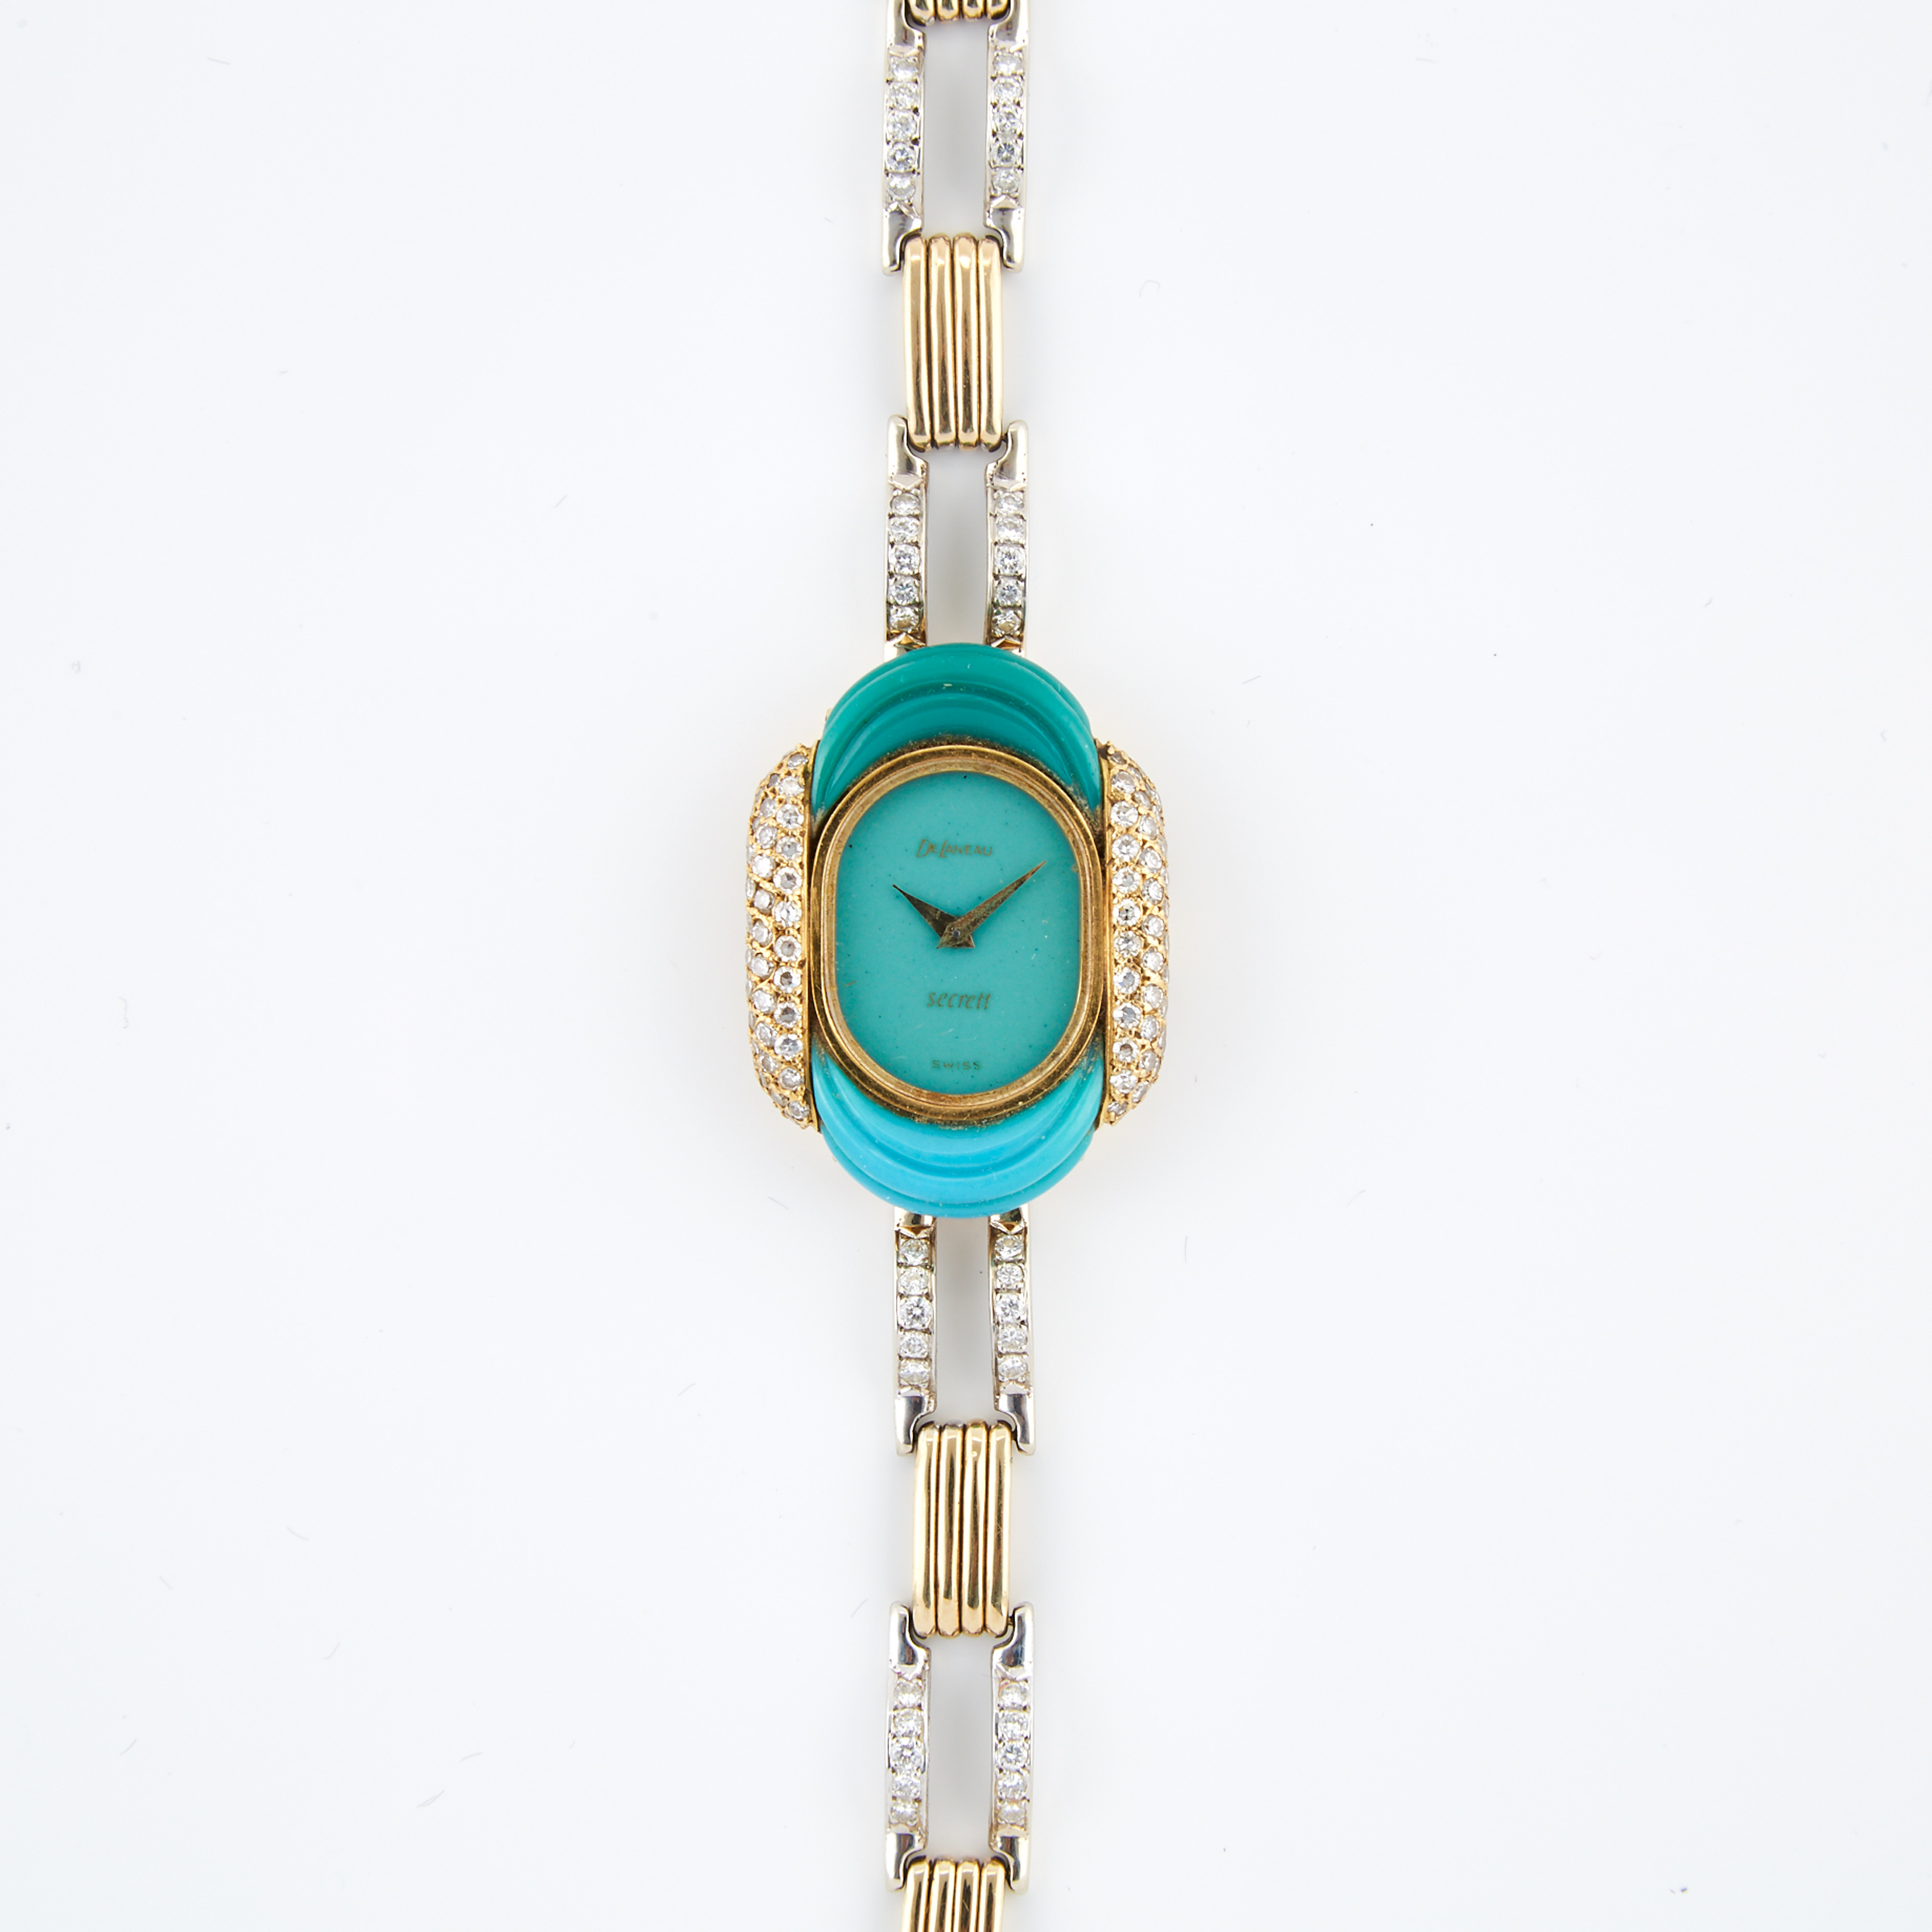 Lady’s De Laneau Wristwatch